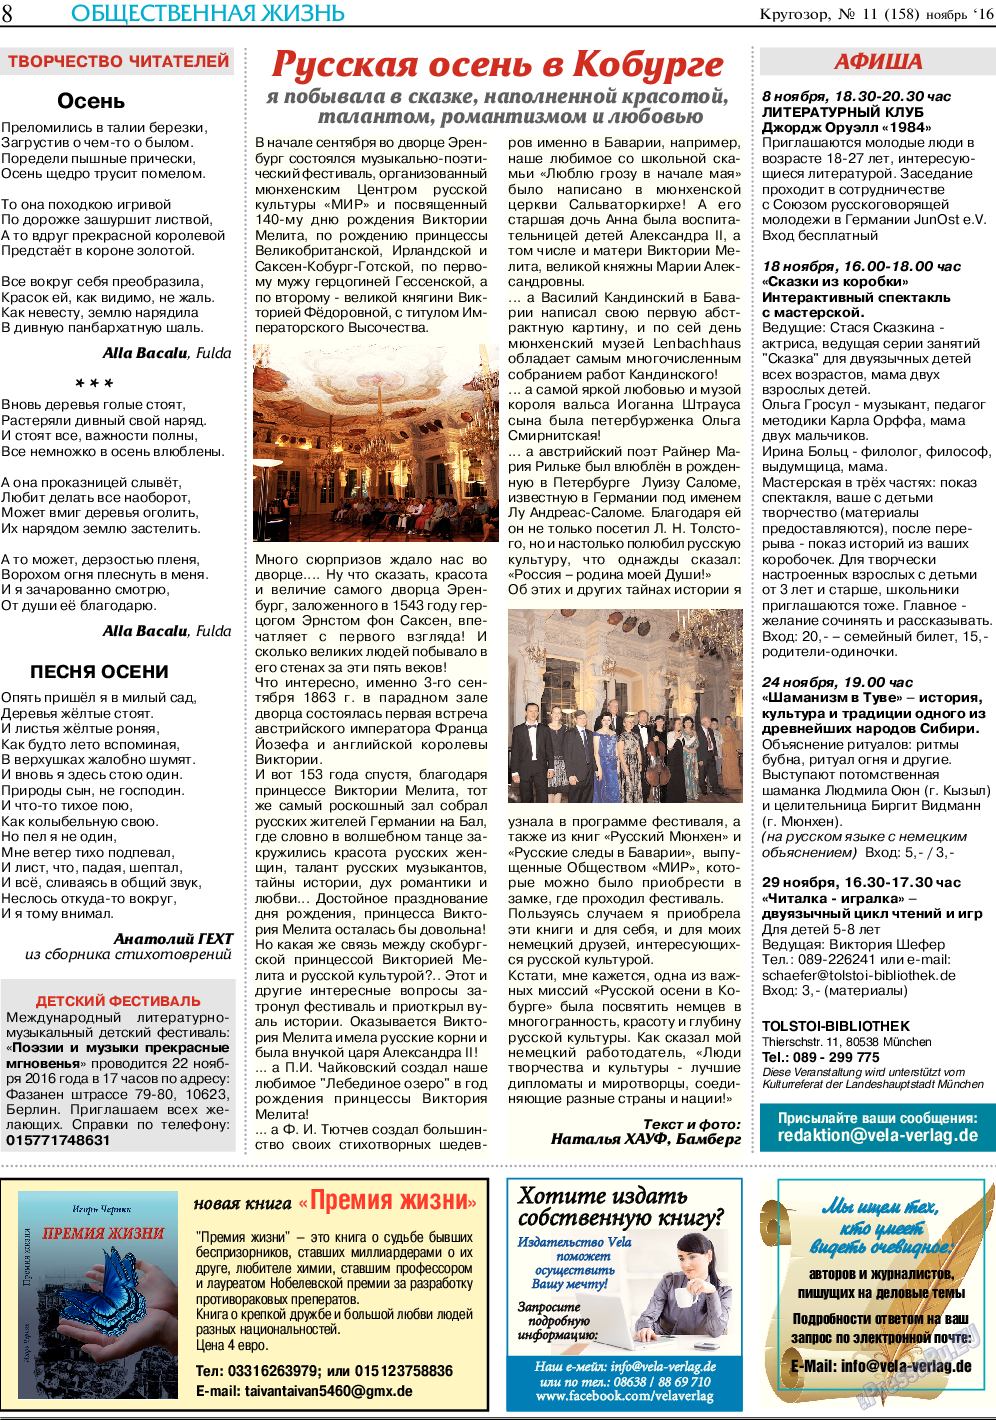 Кругозор, газета. 2016 №11 стр.8